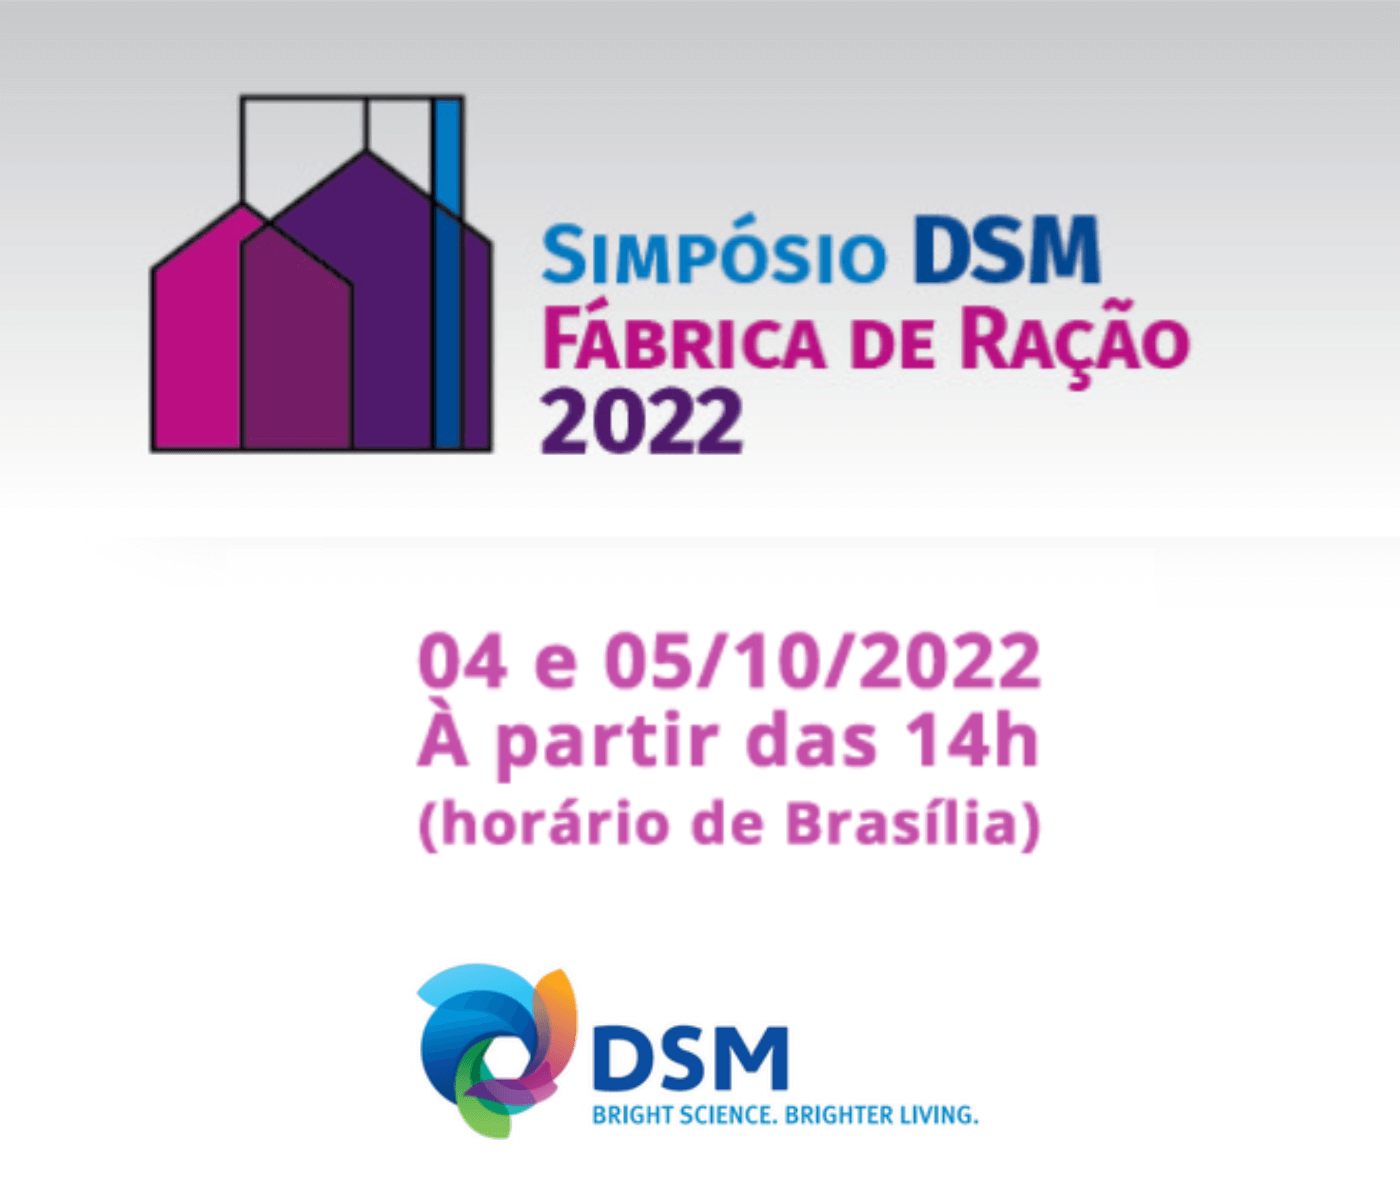 Simpósio DSM Fábrica de Ração 2022 apresentará soluções, tecnologias e inovações para o sucesso da atividade